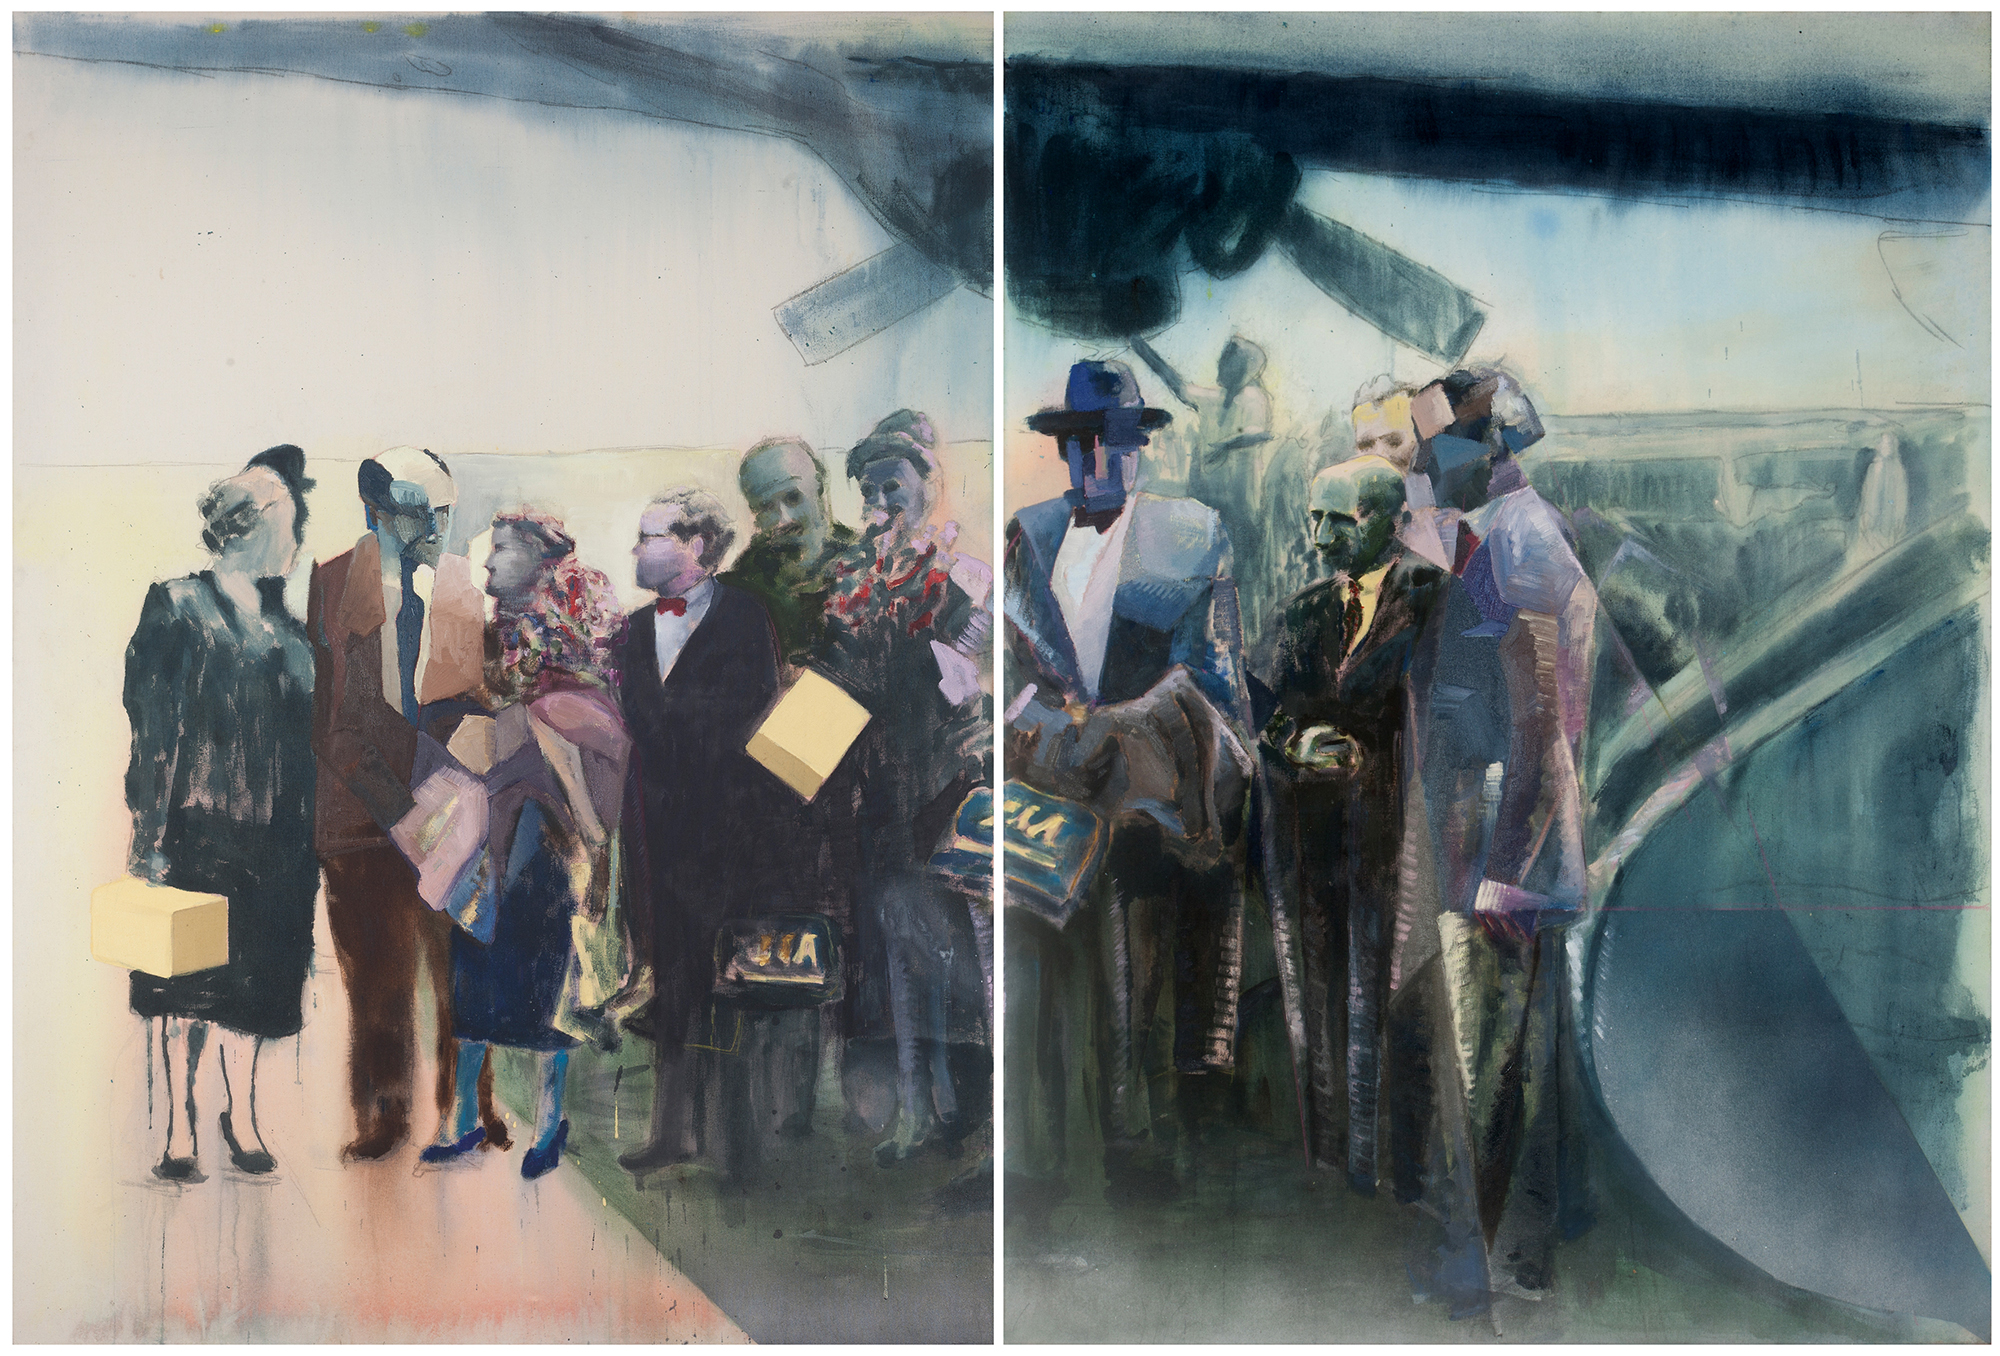    Llegada de Sert, Gropius y sus esposas a Lima; son recibidos en el aeropuerto por los arquitectos Velarde, Linder, Marquina y Belaunde; 1954,    2015, óleo sobre tela, 150 x 220 cm.  